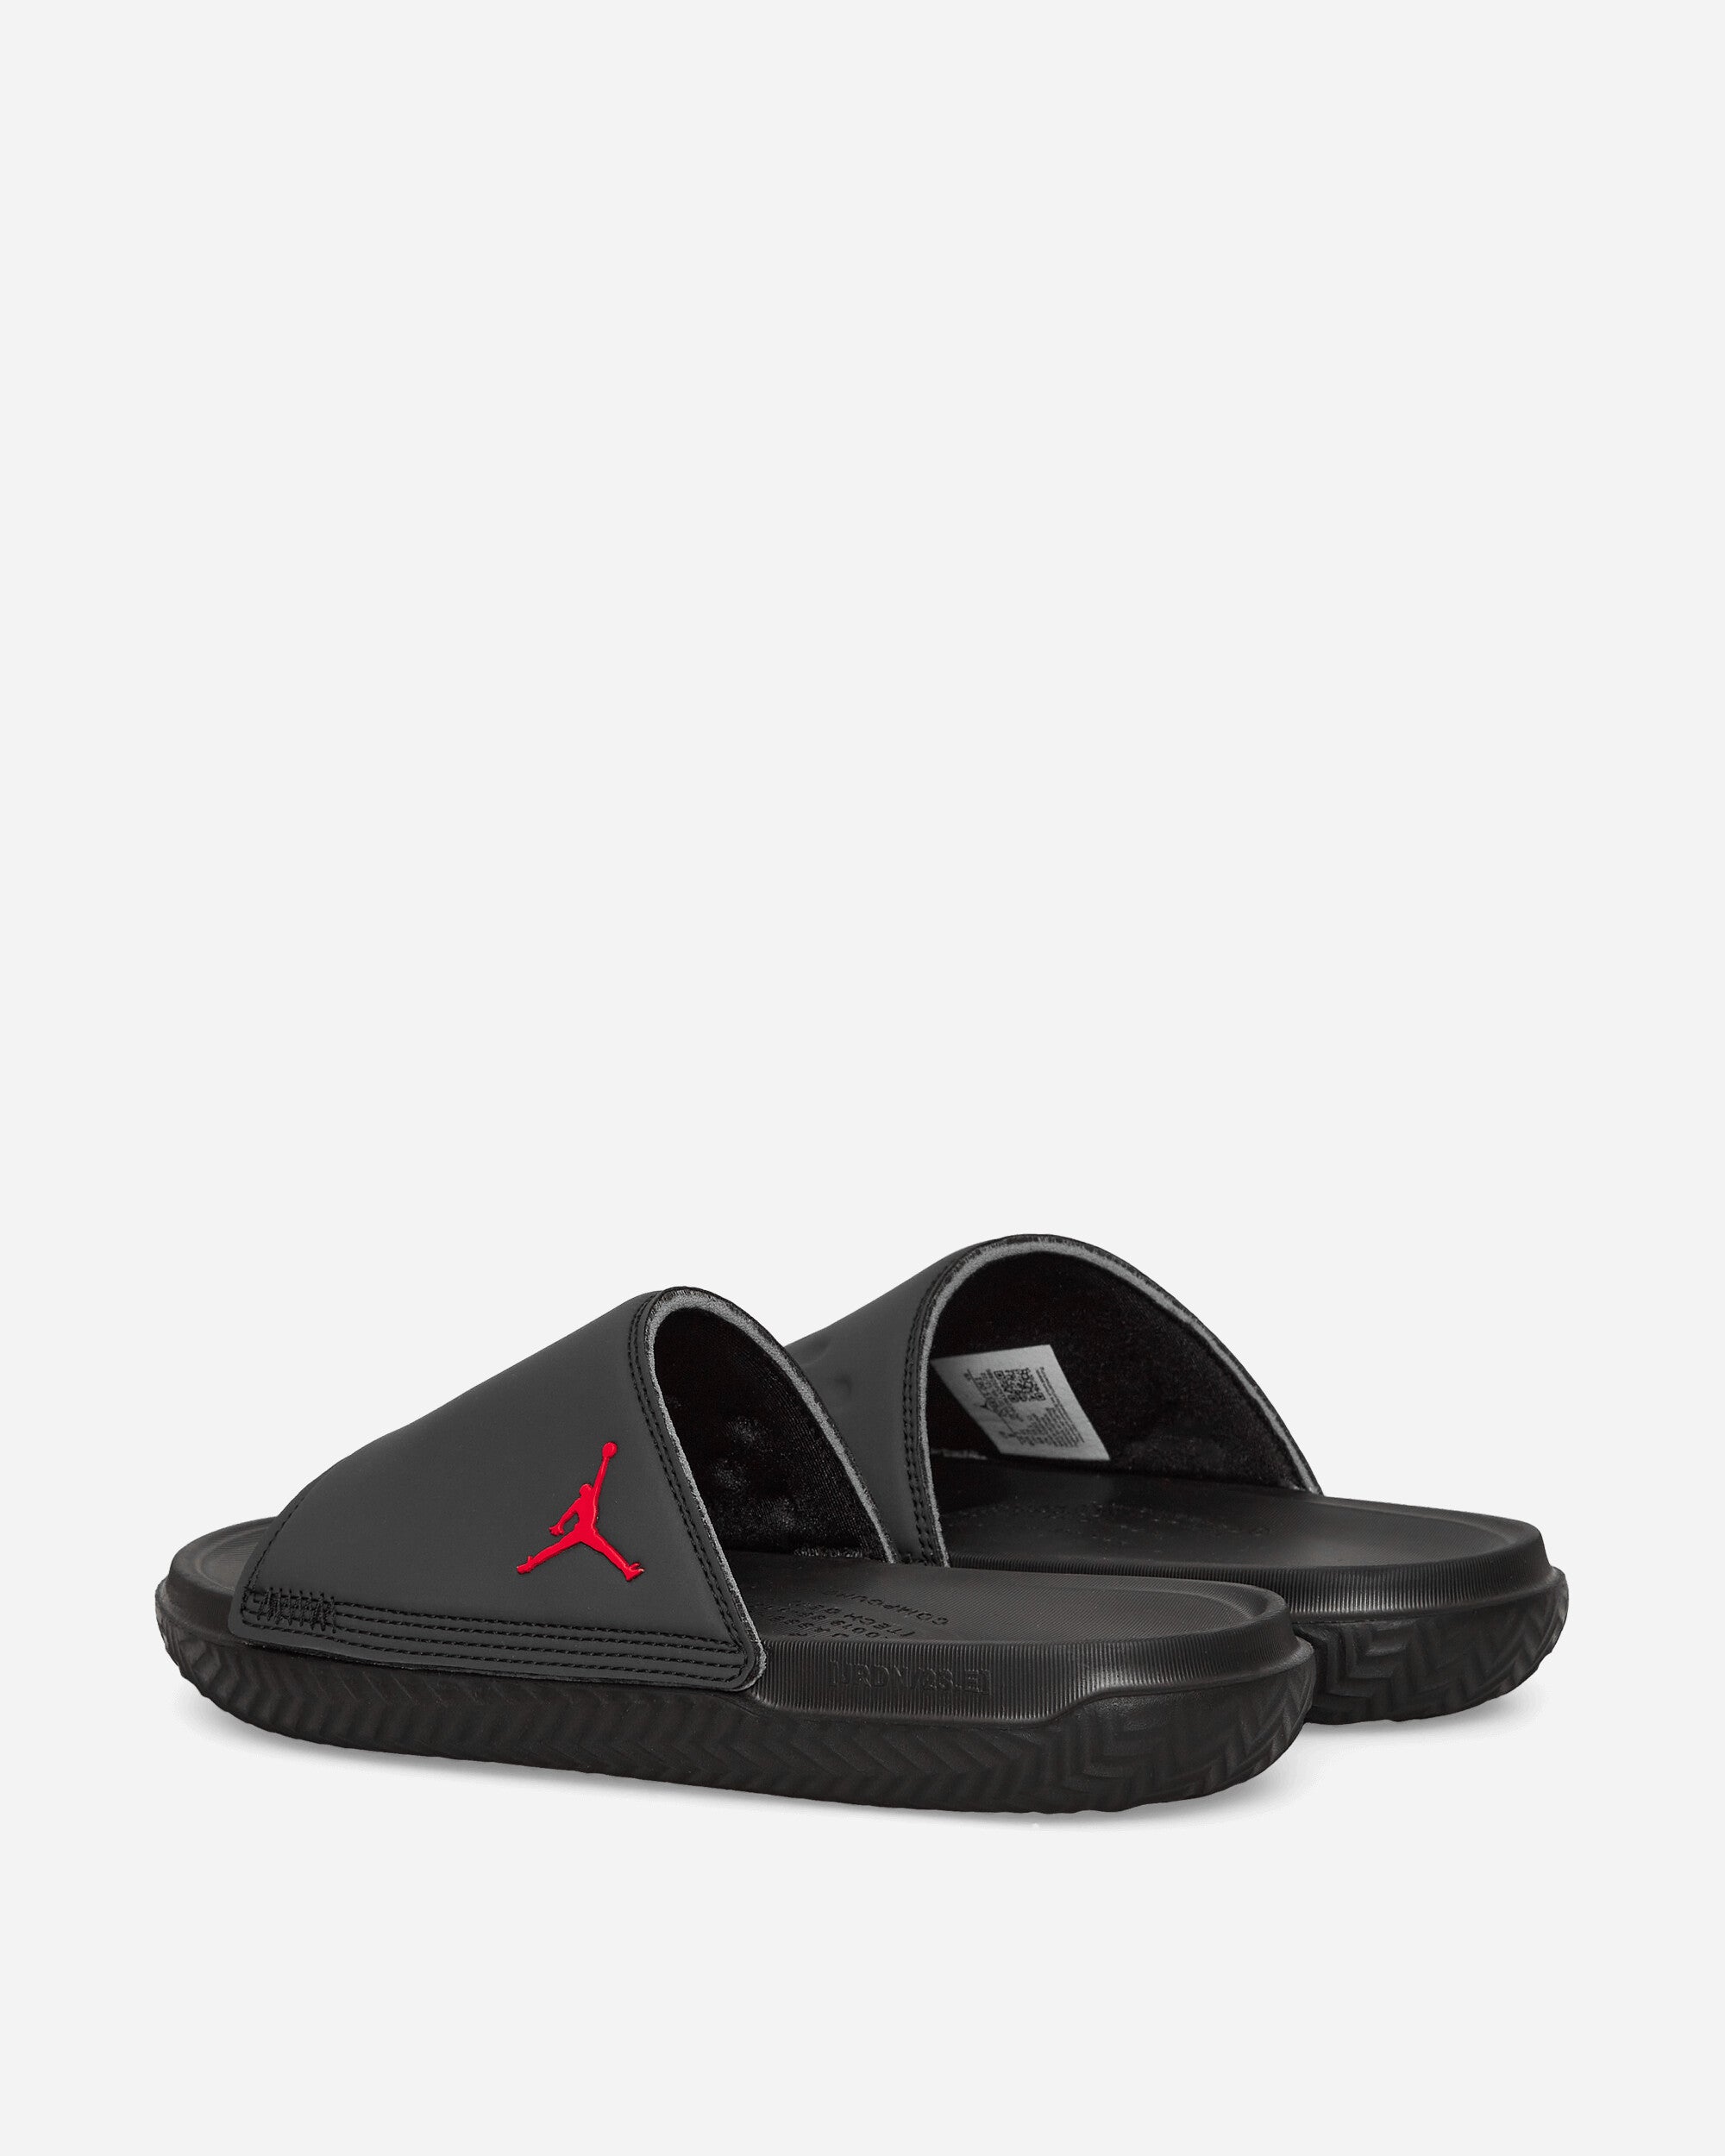 Nike Jordan Play Slides Anthracite - Slam Jam Official Store